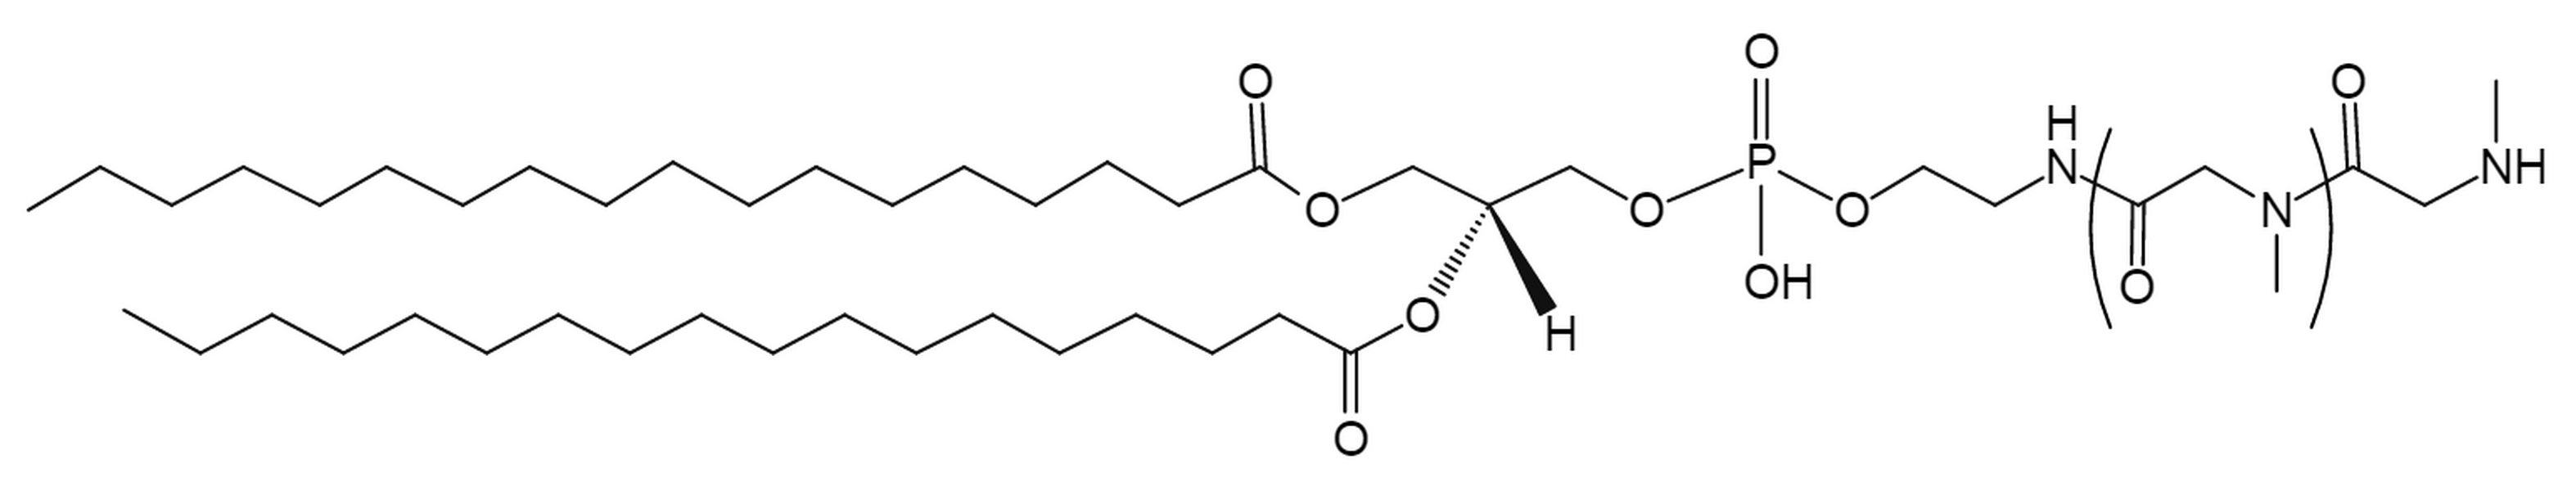 DSPE-Polysarcosine100